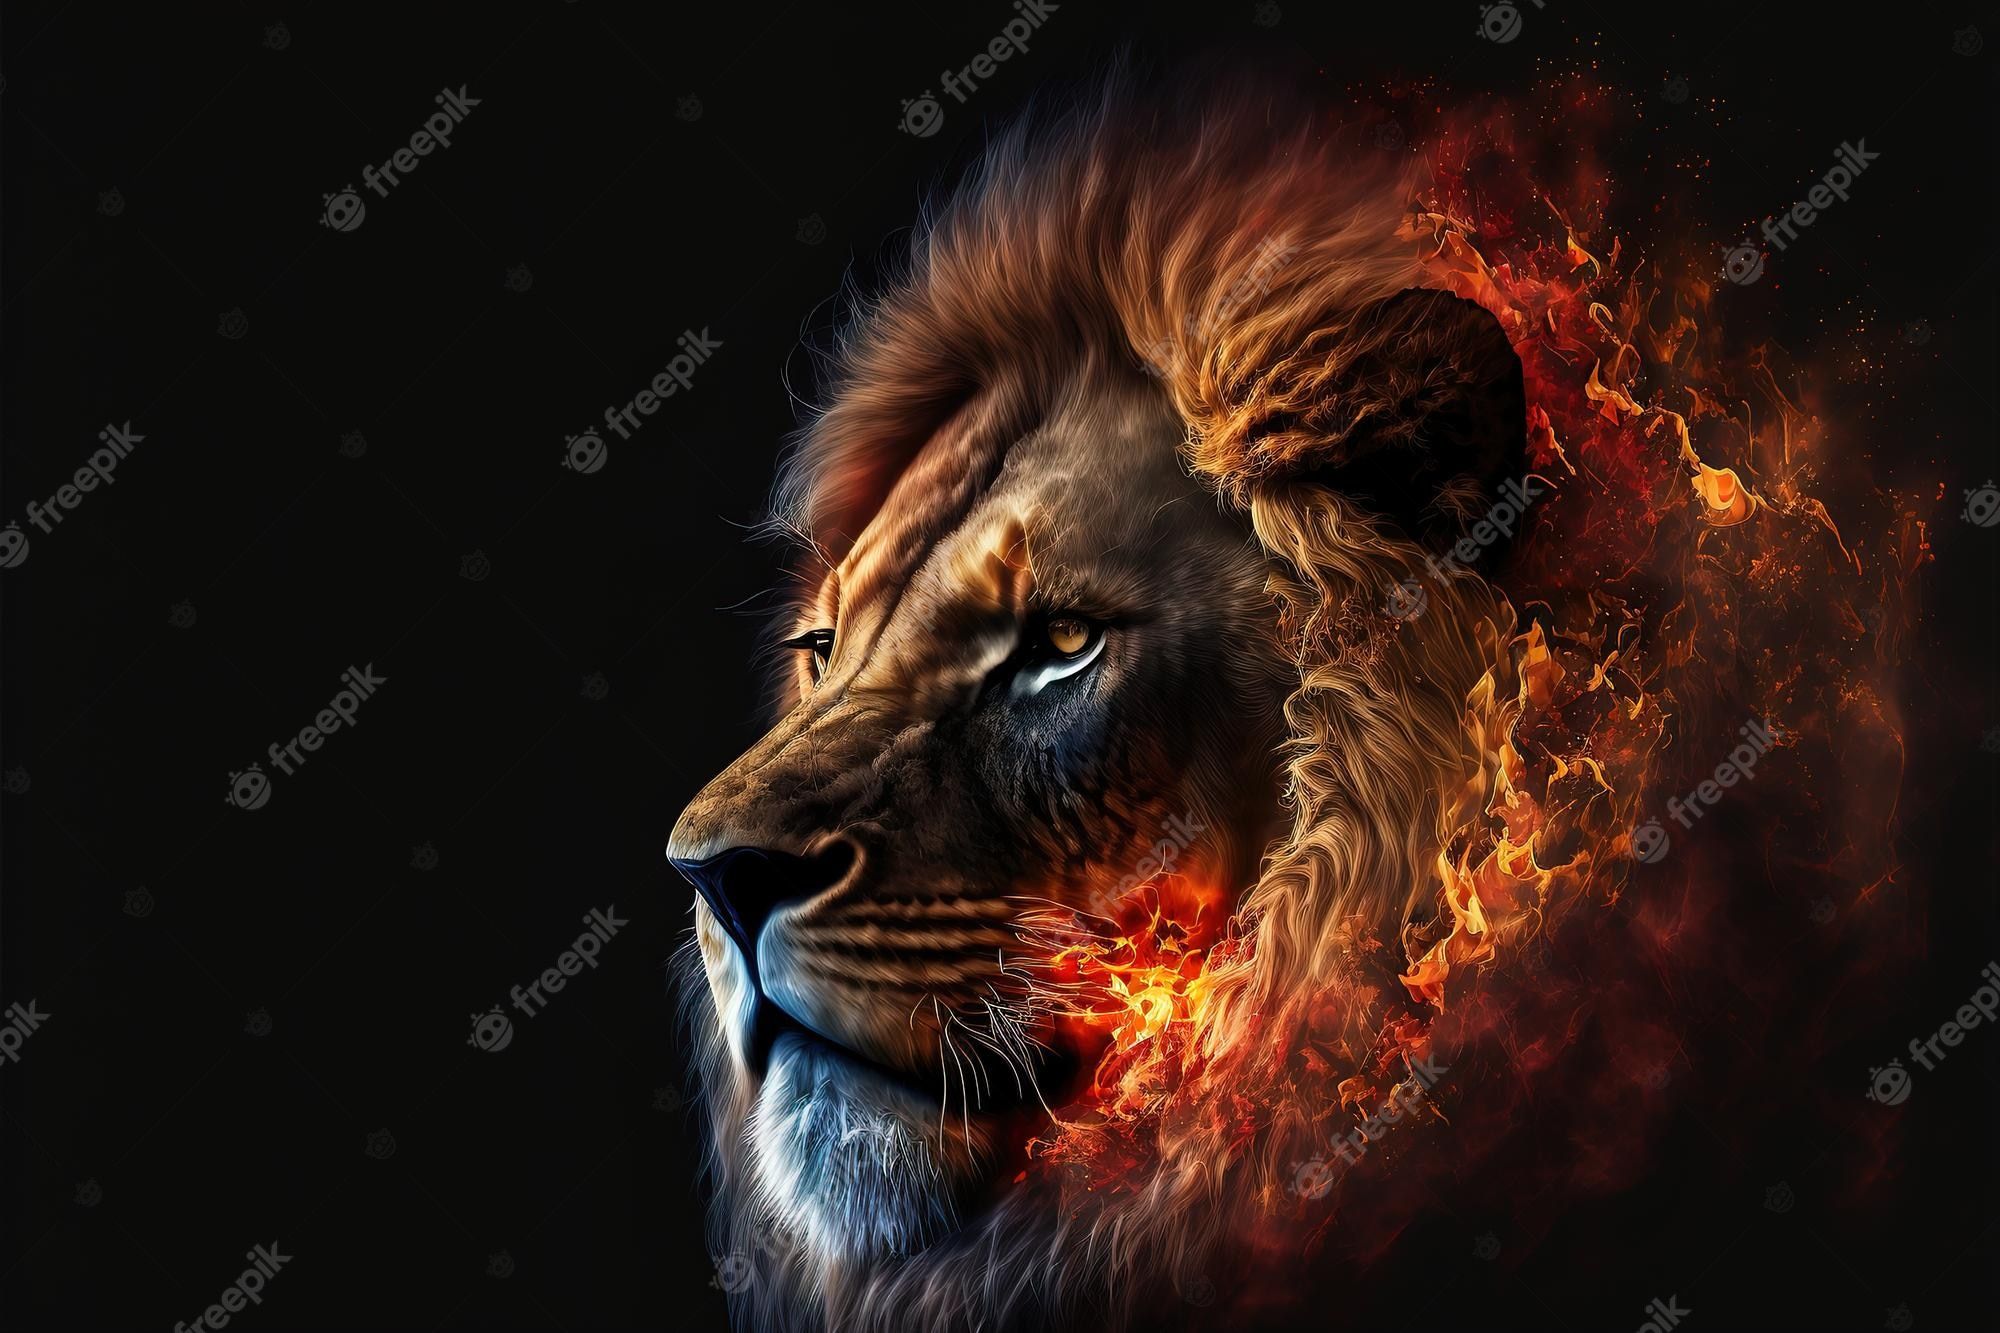 Lion Wallpaper Picture